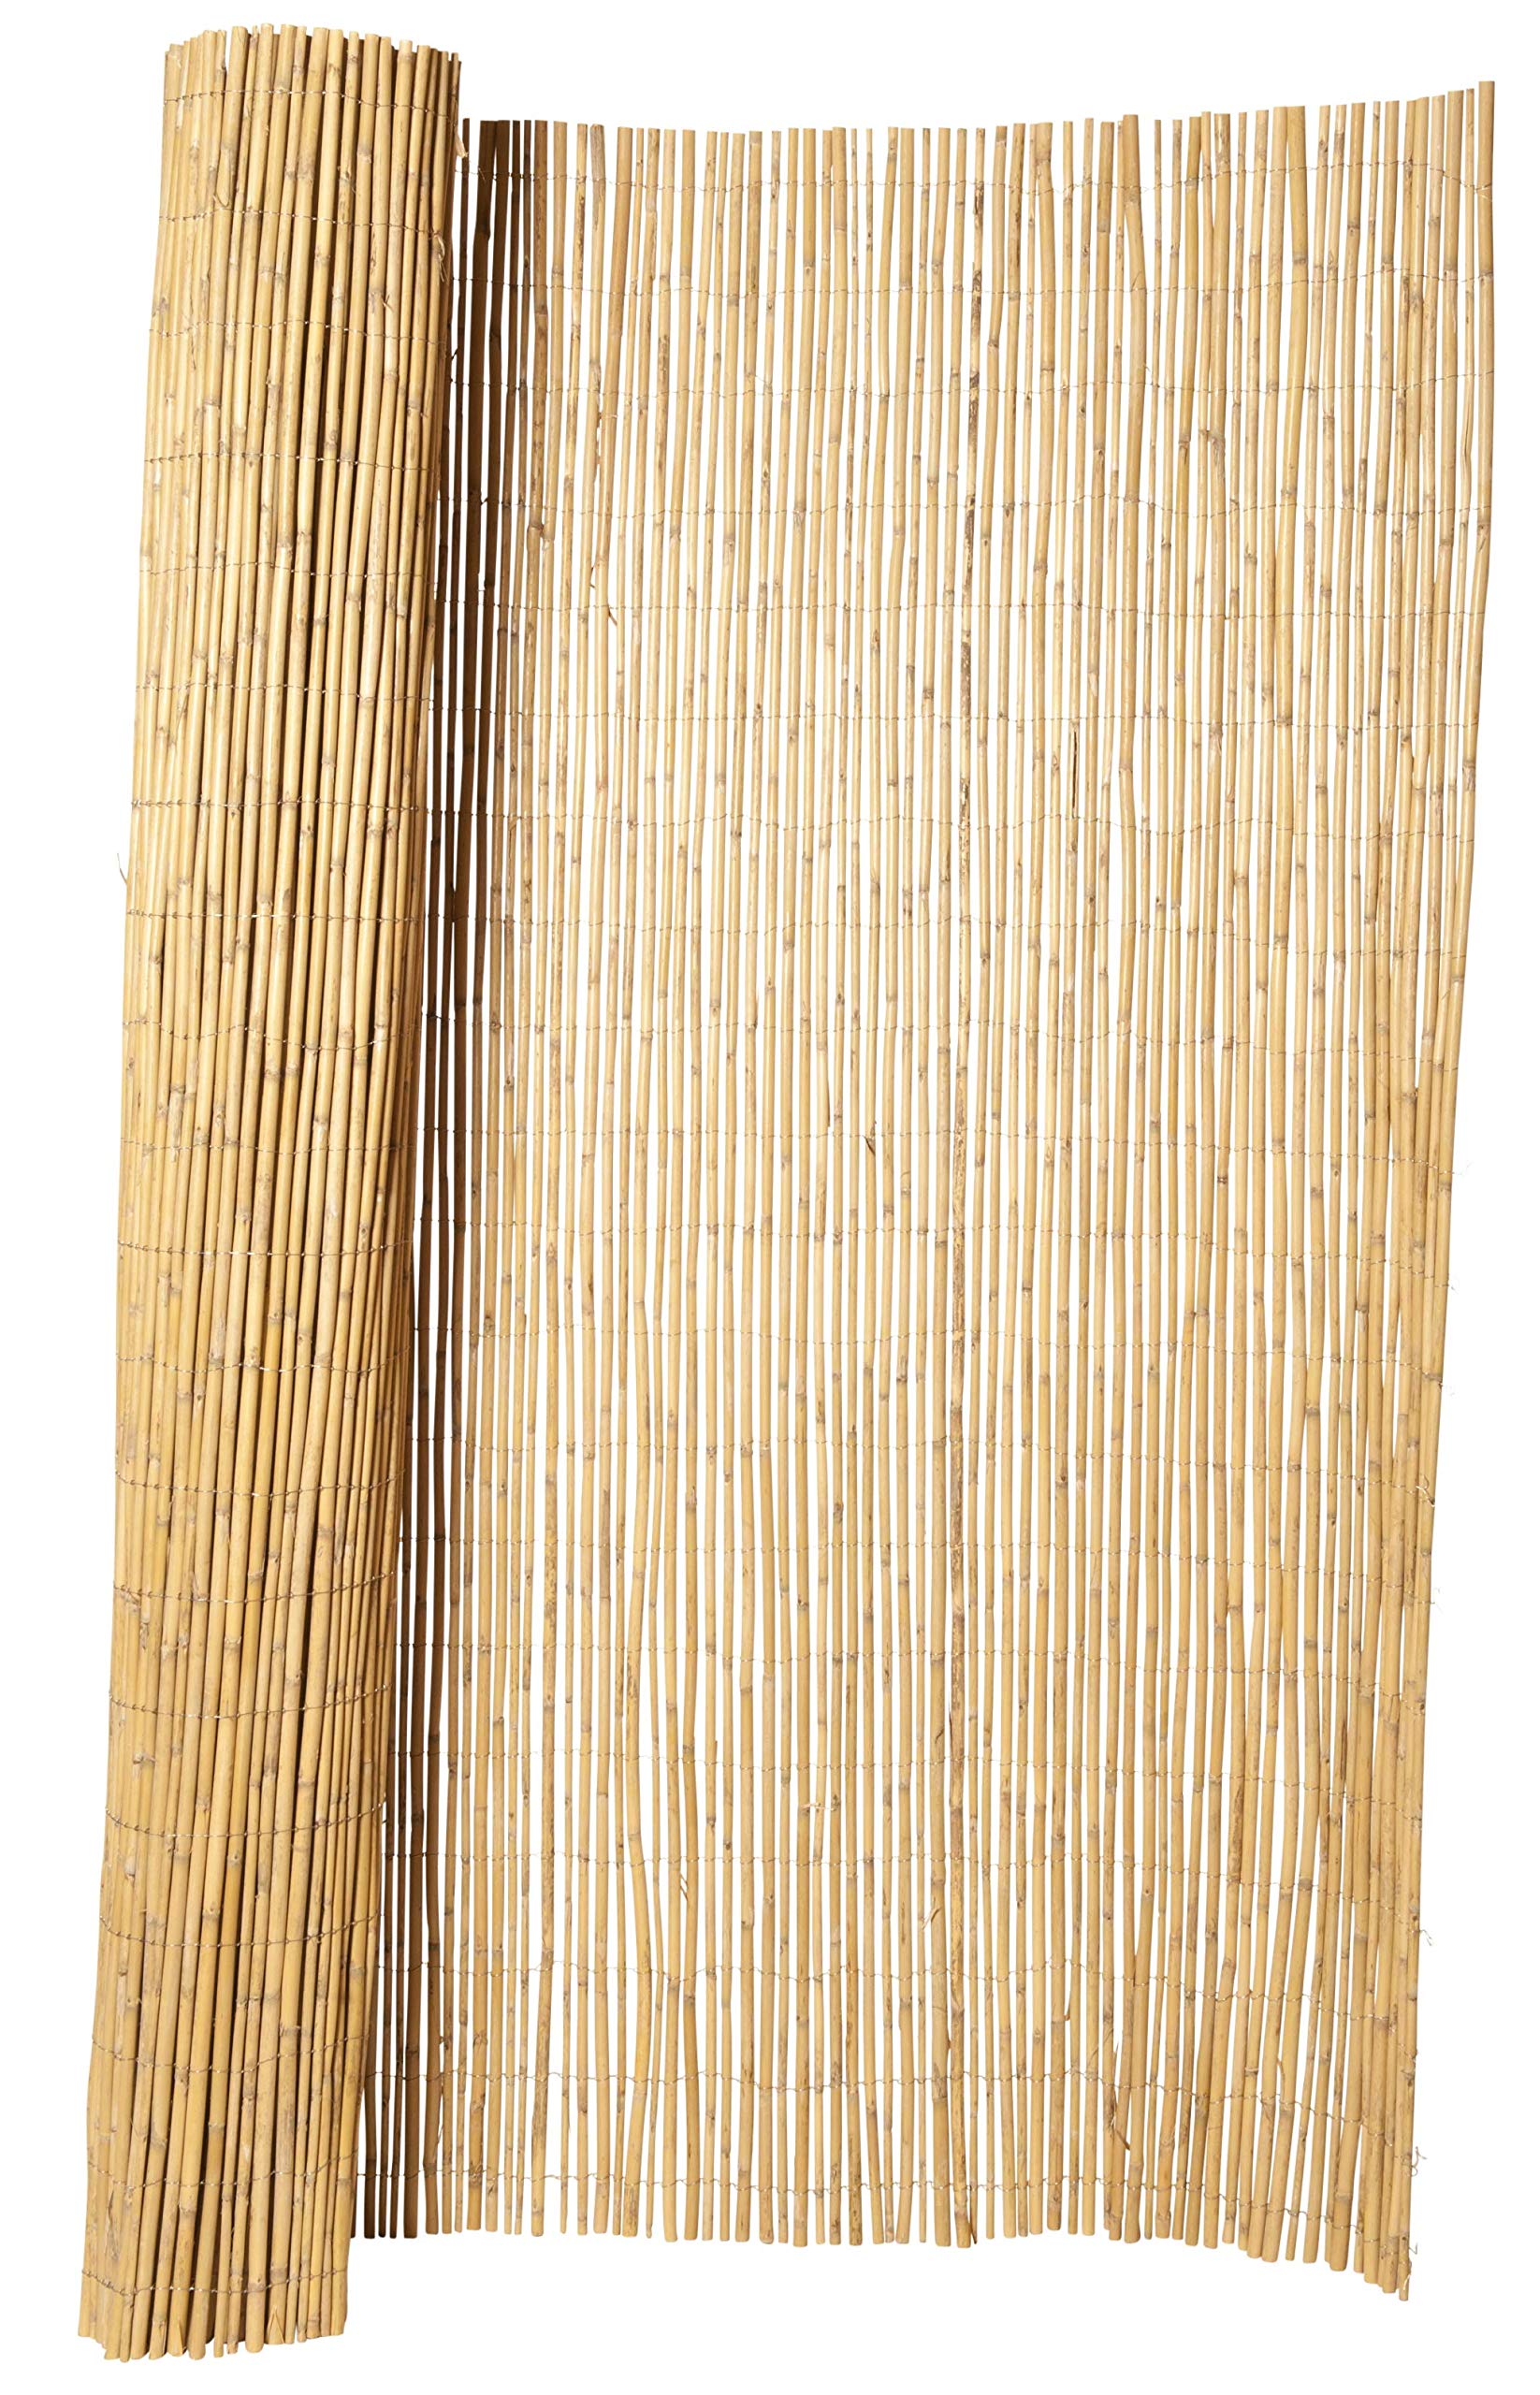 Hiss Reet® Bambus Sichtschutz, Bambusmatte I Perfekter Windschutz & Sichtschutz für Balkon, Zaun & Garten I Verschiedene Größen (100 x 300 cm)